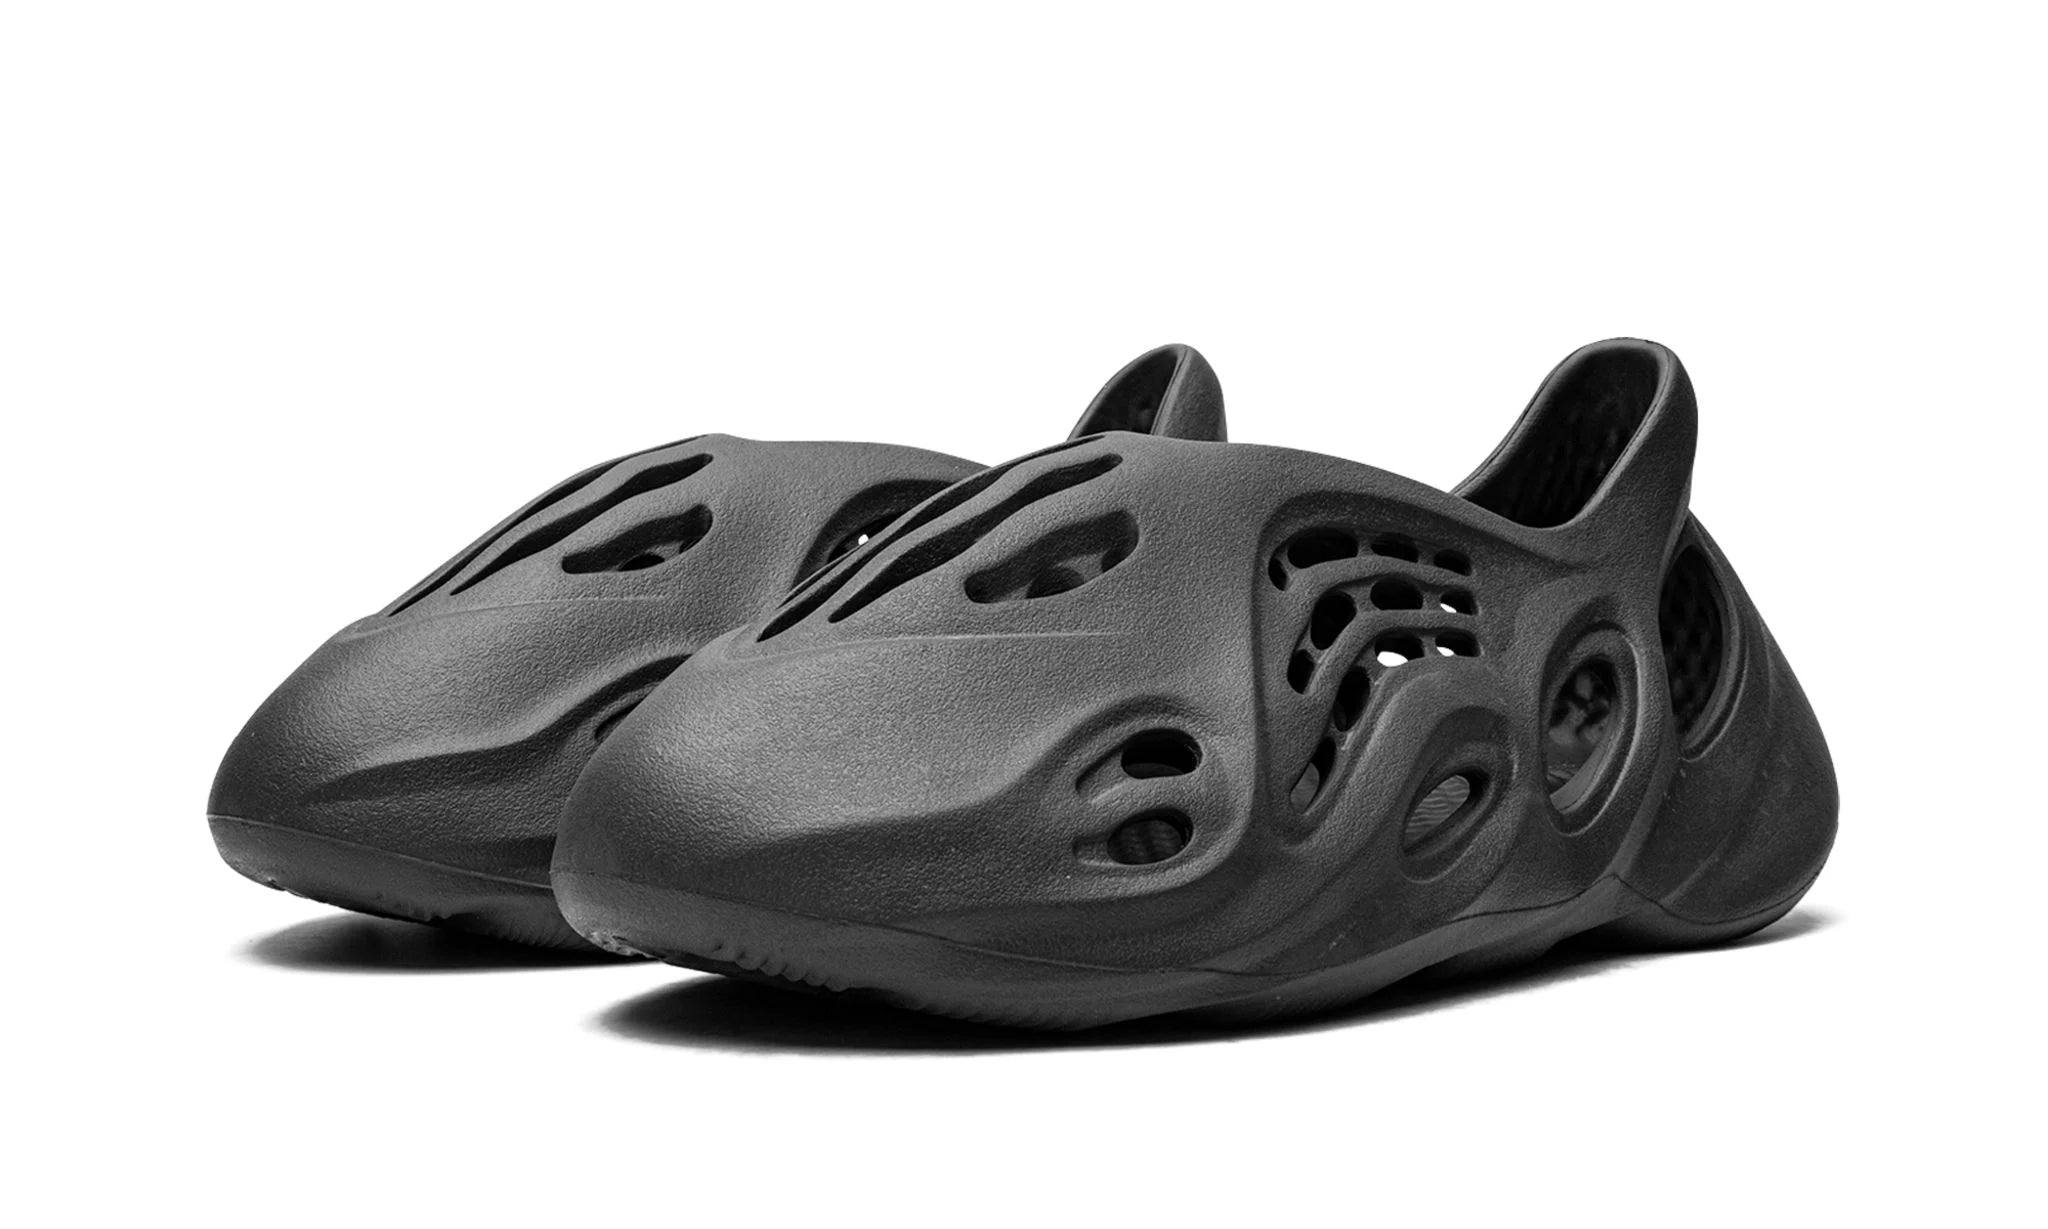 Adidas Yeezy Foam Runner Onyx - - - Pirri - Yeezy Piankowy Biegacz Czarny